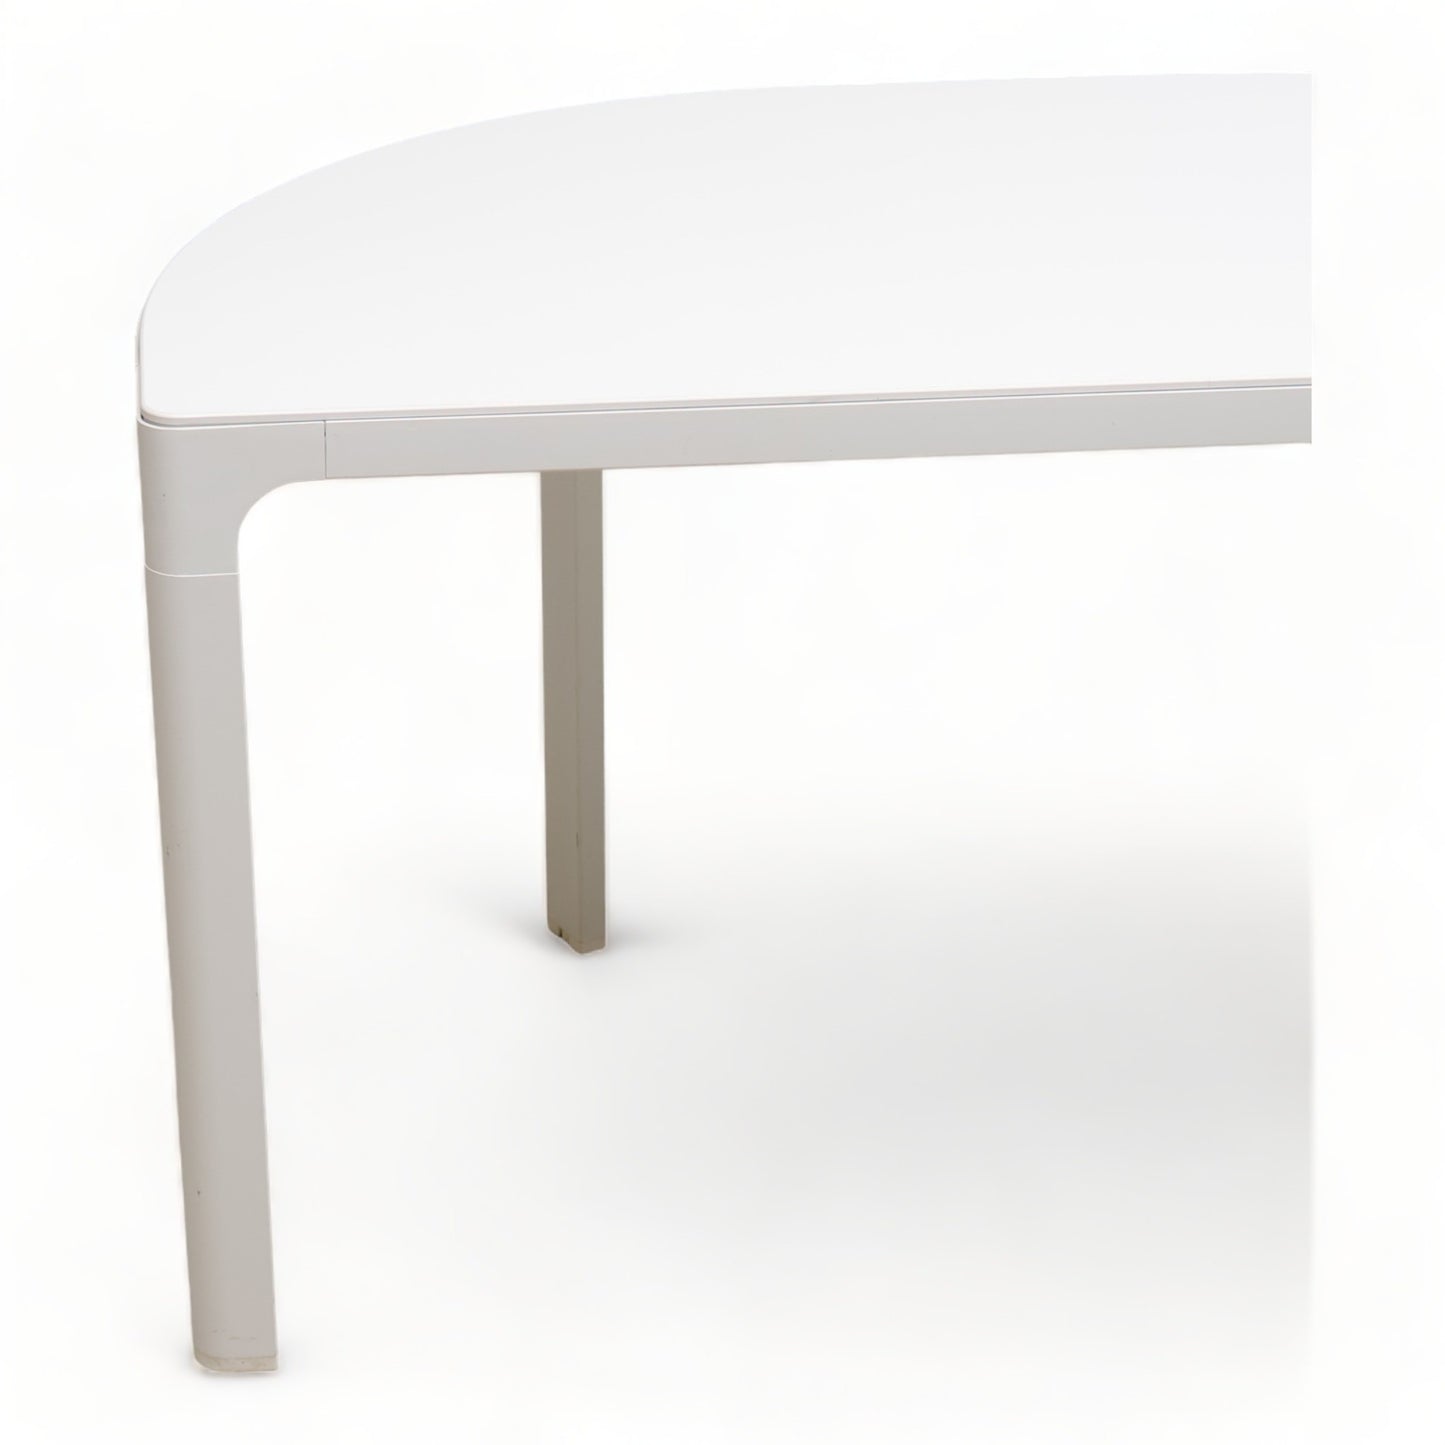 Kvalitetssikret | 140x70 cm, IKEA Bekant møtebord, halvsirkel